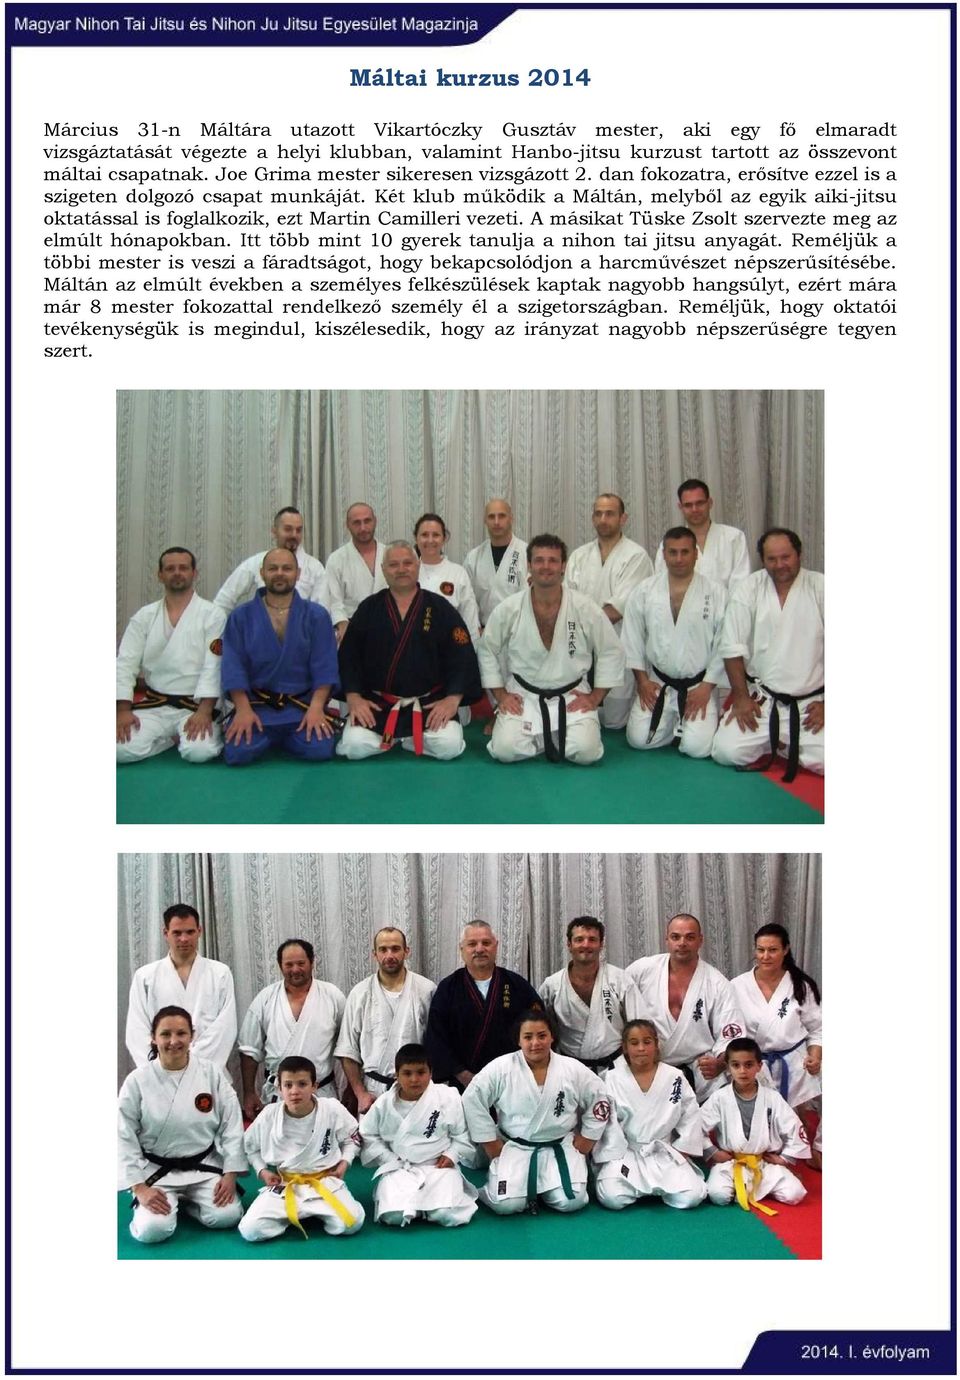 Két klub működik a Máltán, melyből az egyik aiki-jitsu oktatással is foglalkozik, ezt Martin Camilleri vezeti. A másikat Tüske Zsolt szervezte meg az elmúlt hónapokban.